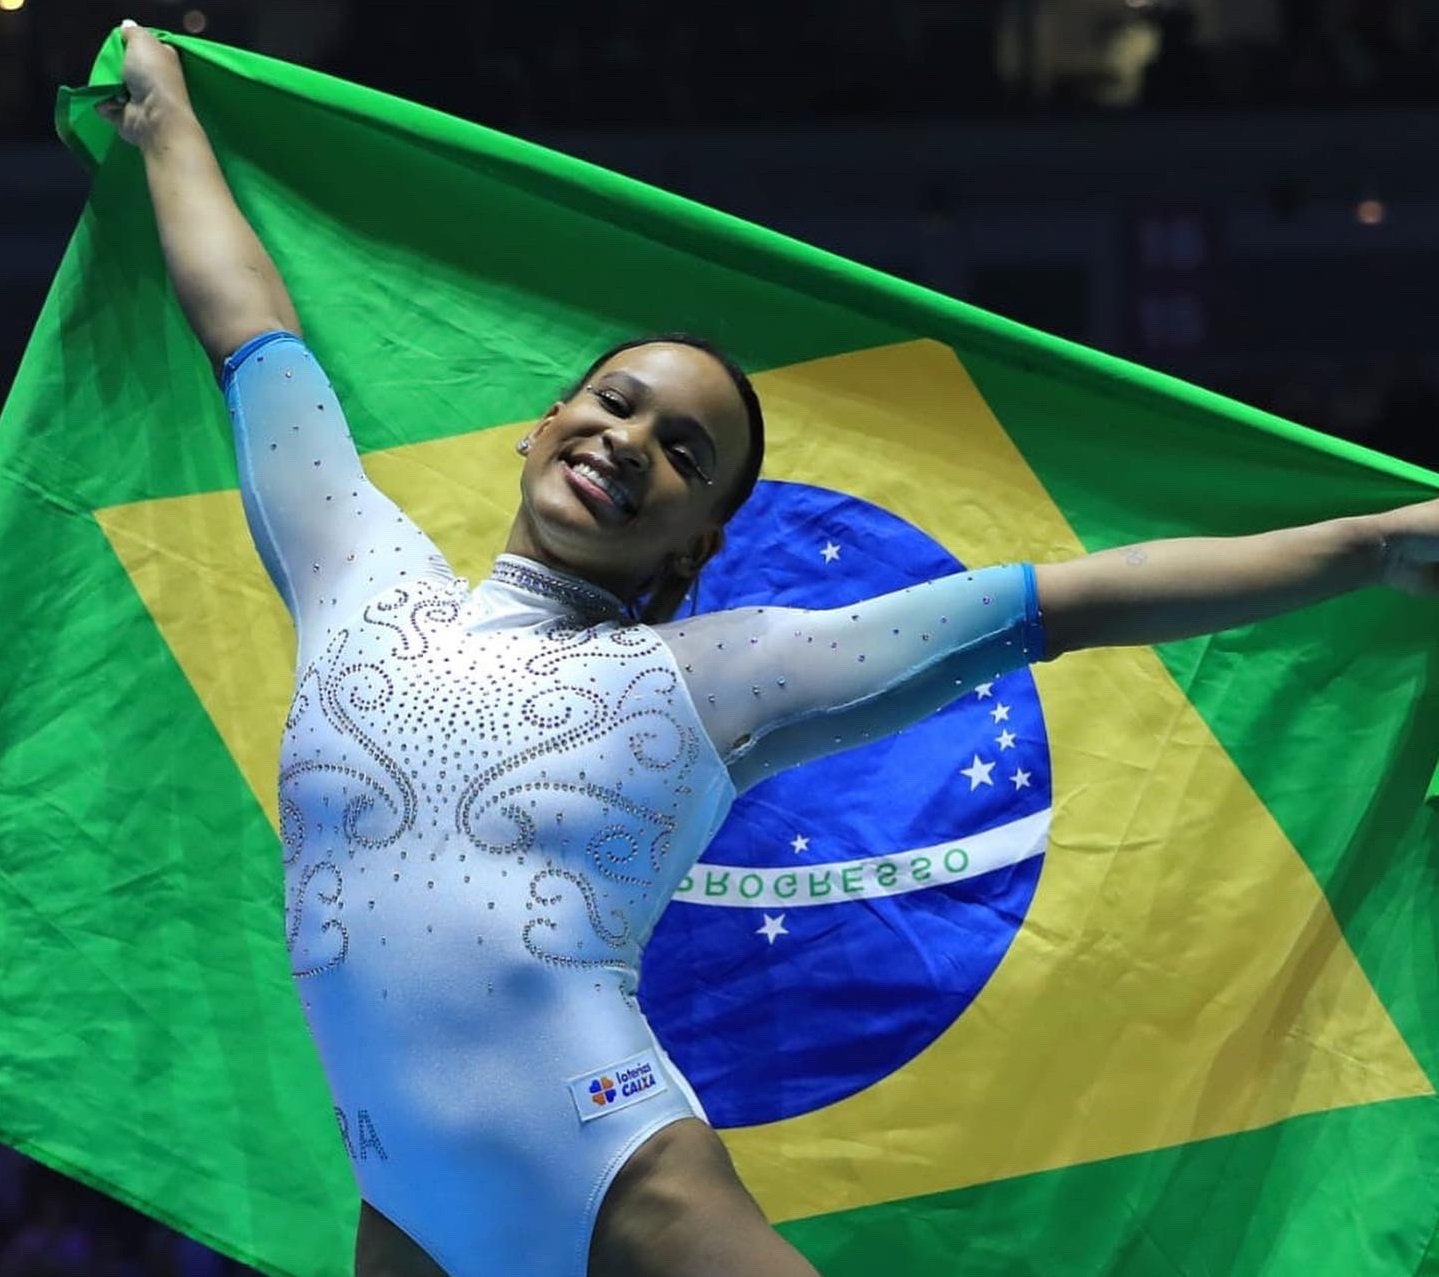 Brasil segue sem medalhas após dois dias do Mundial de Luta Olímpica - ESPN